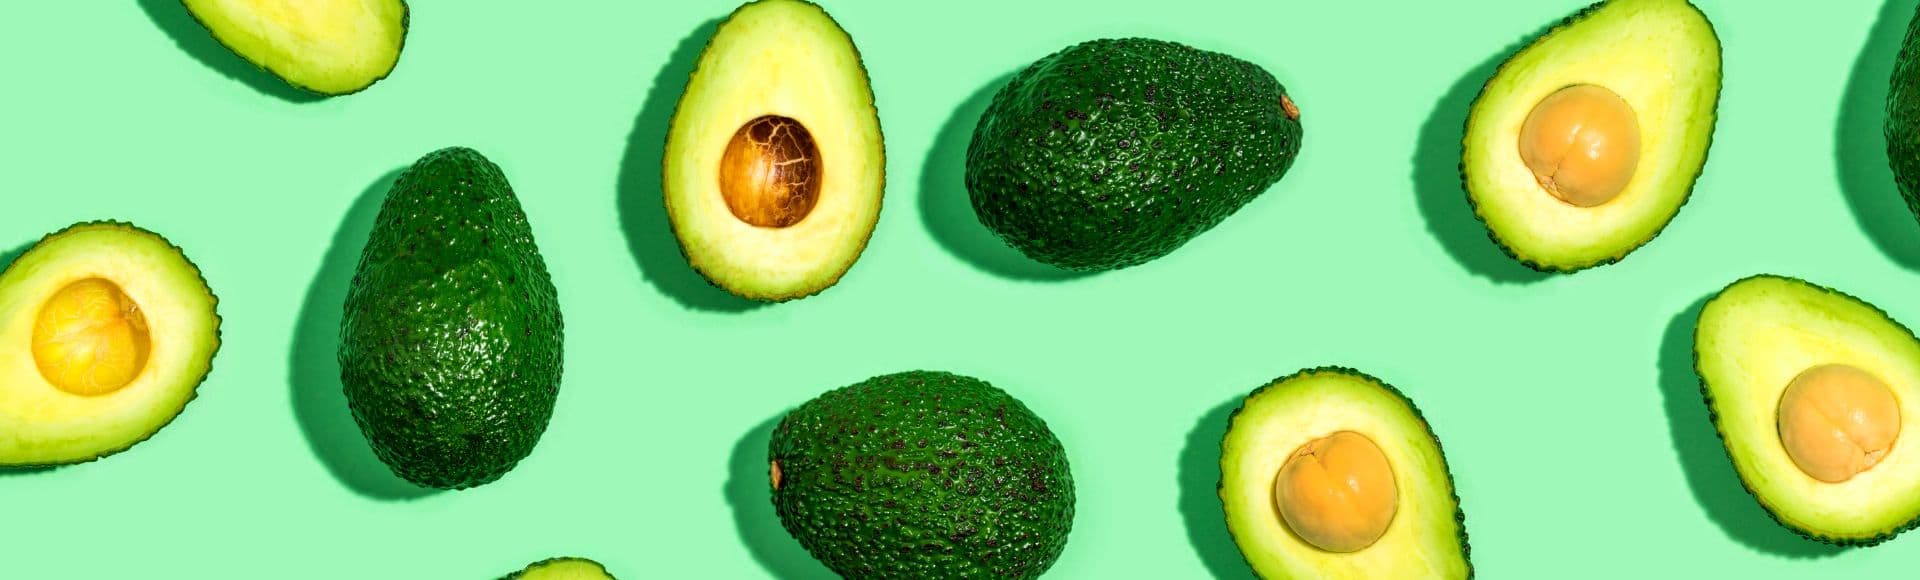 Avocados auf grünem Hintergrund